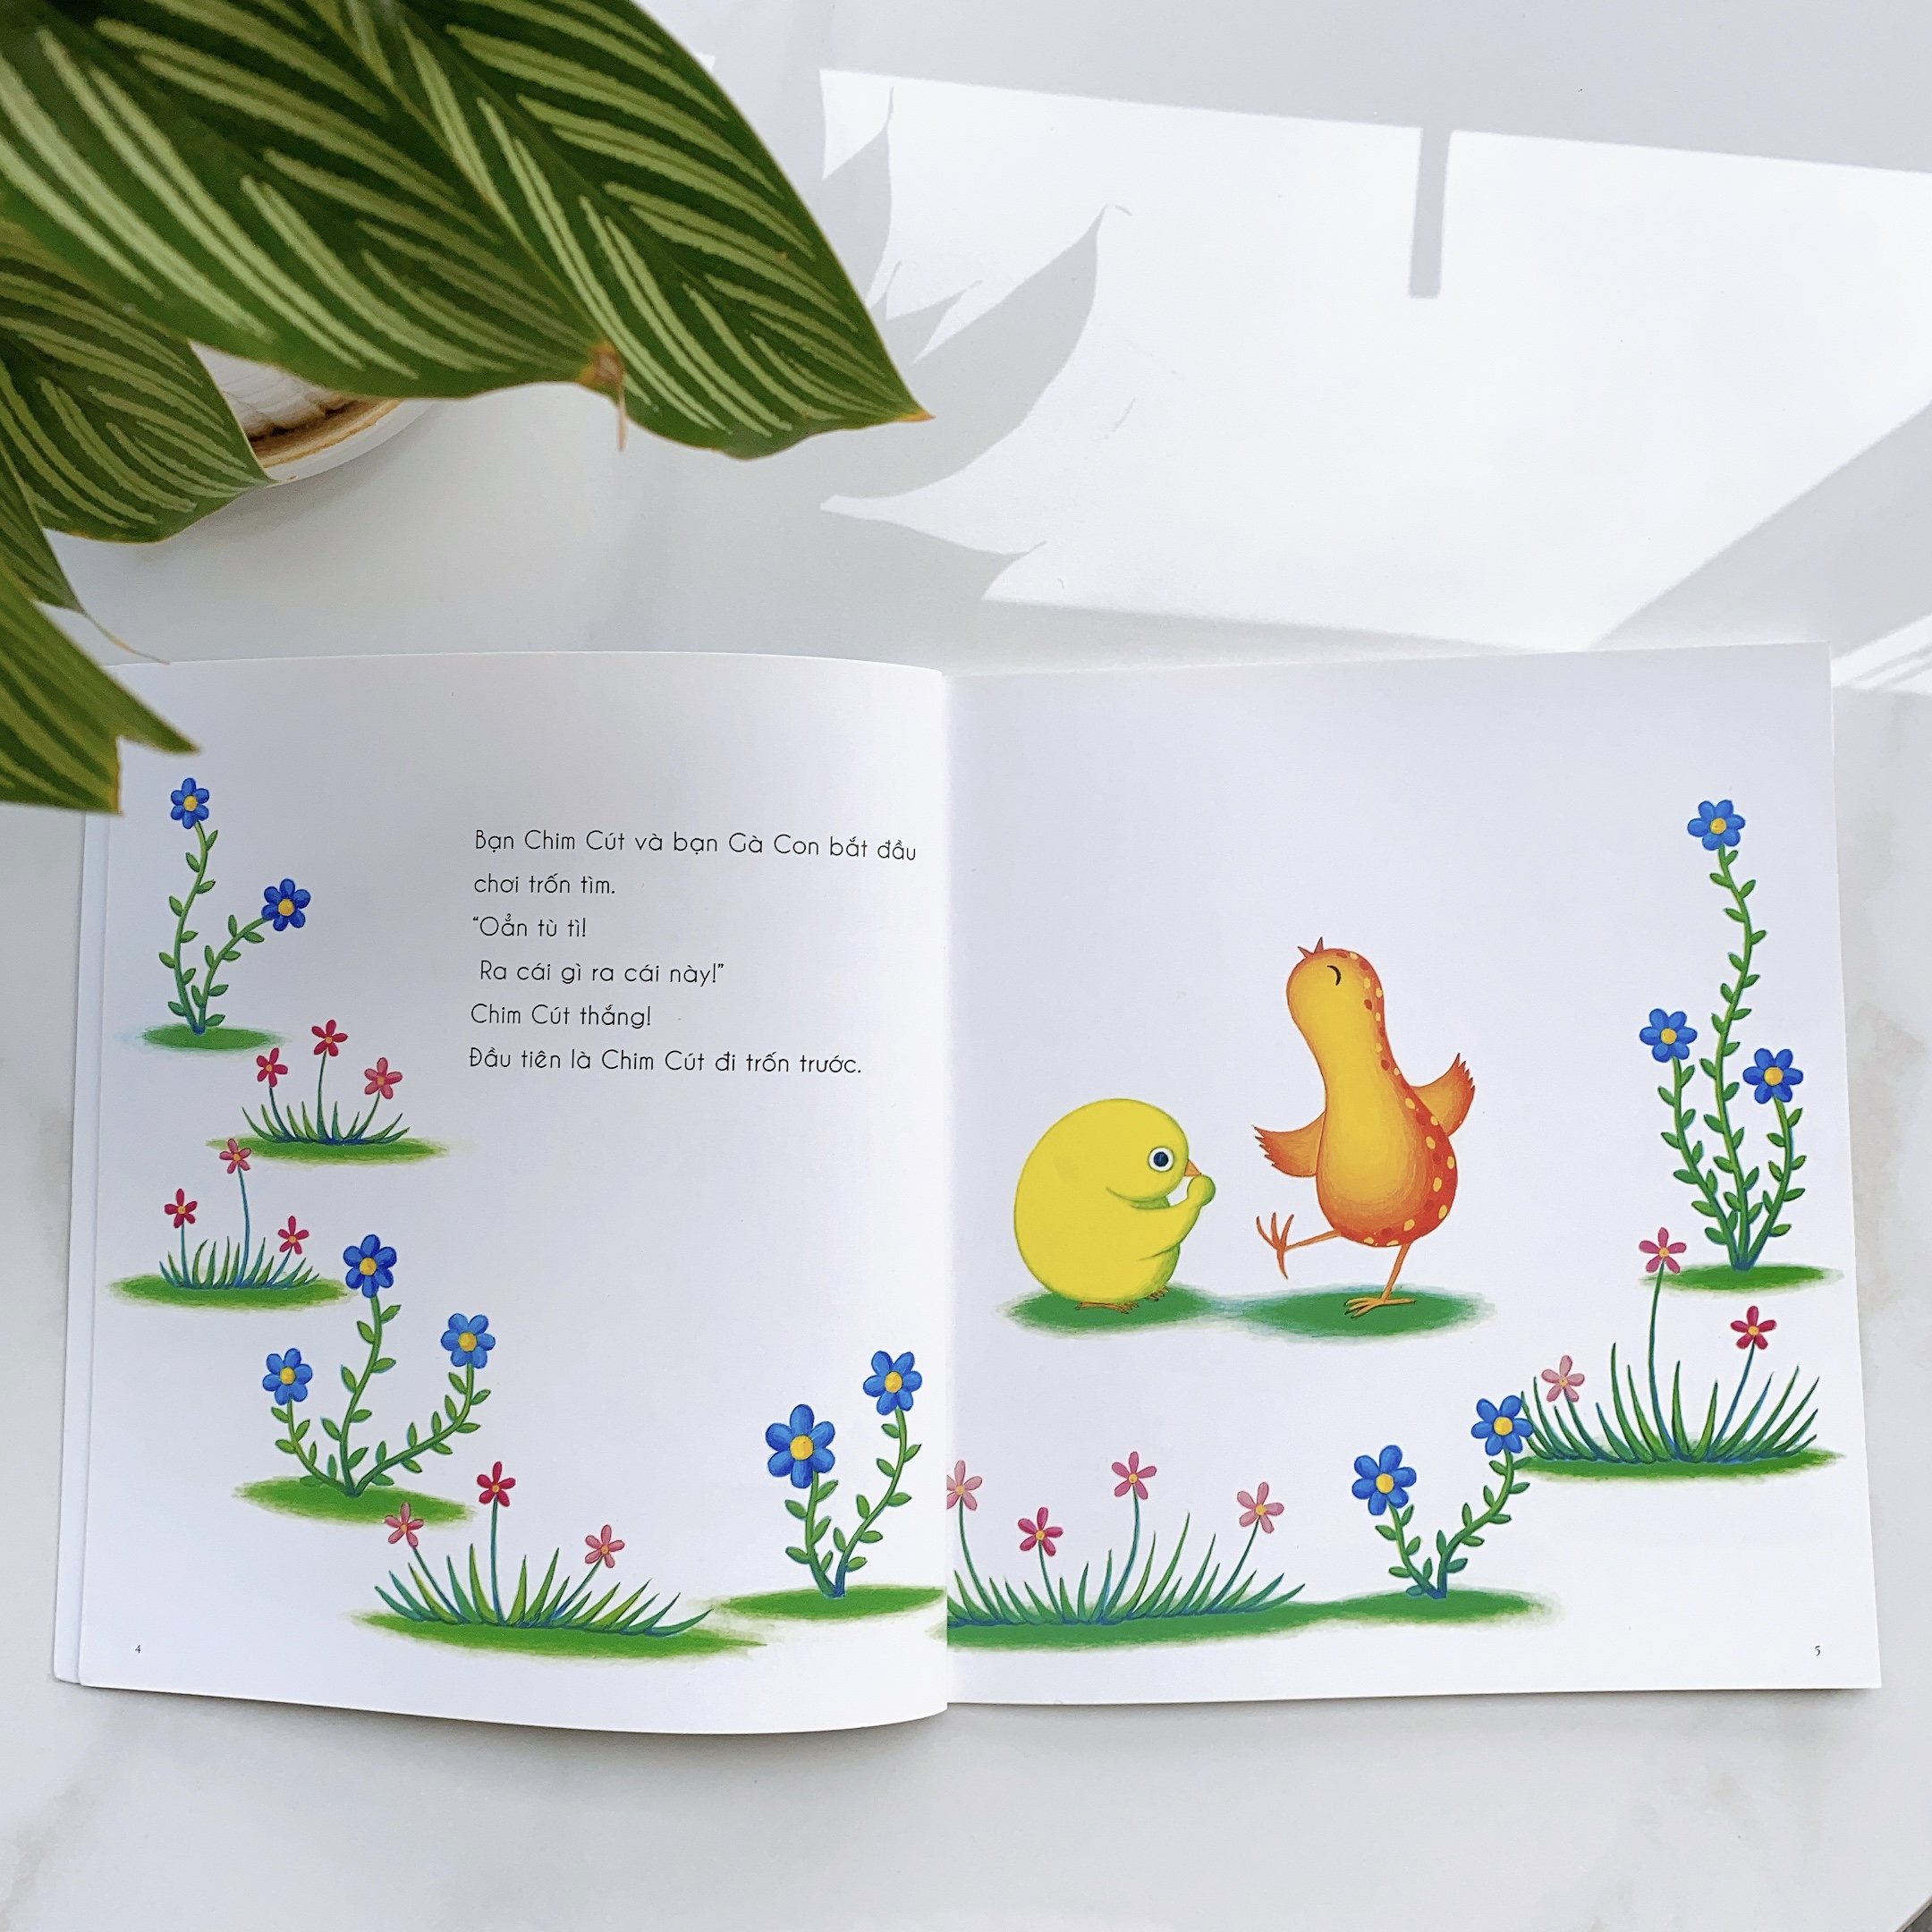 Sách cho bé từ 0-3 tuổi - Nhận biết, Quan sát - Bạn chim cút chơi trốn tìm (Truyện tranh Ehon Nhật Bản)